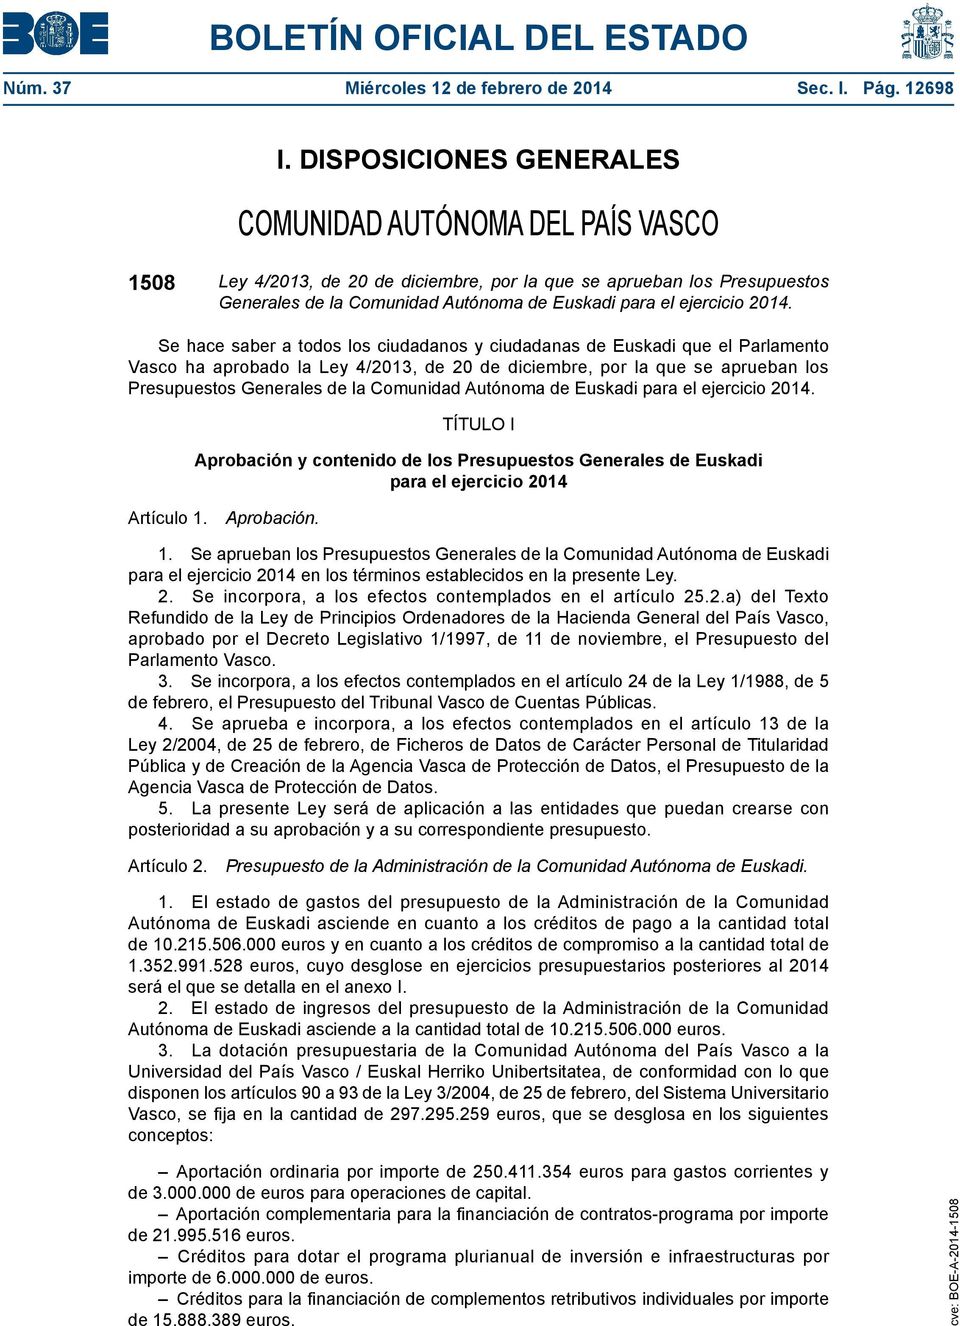 2014. Se hace saber a todos los ciudadanos y ciudadanas de Euskadi que el Parlamento Vasco ha aprobado la Ley 4/2013, de 20 de diciembre, por la que se aprueban los Presupuestos Generales de la